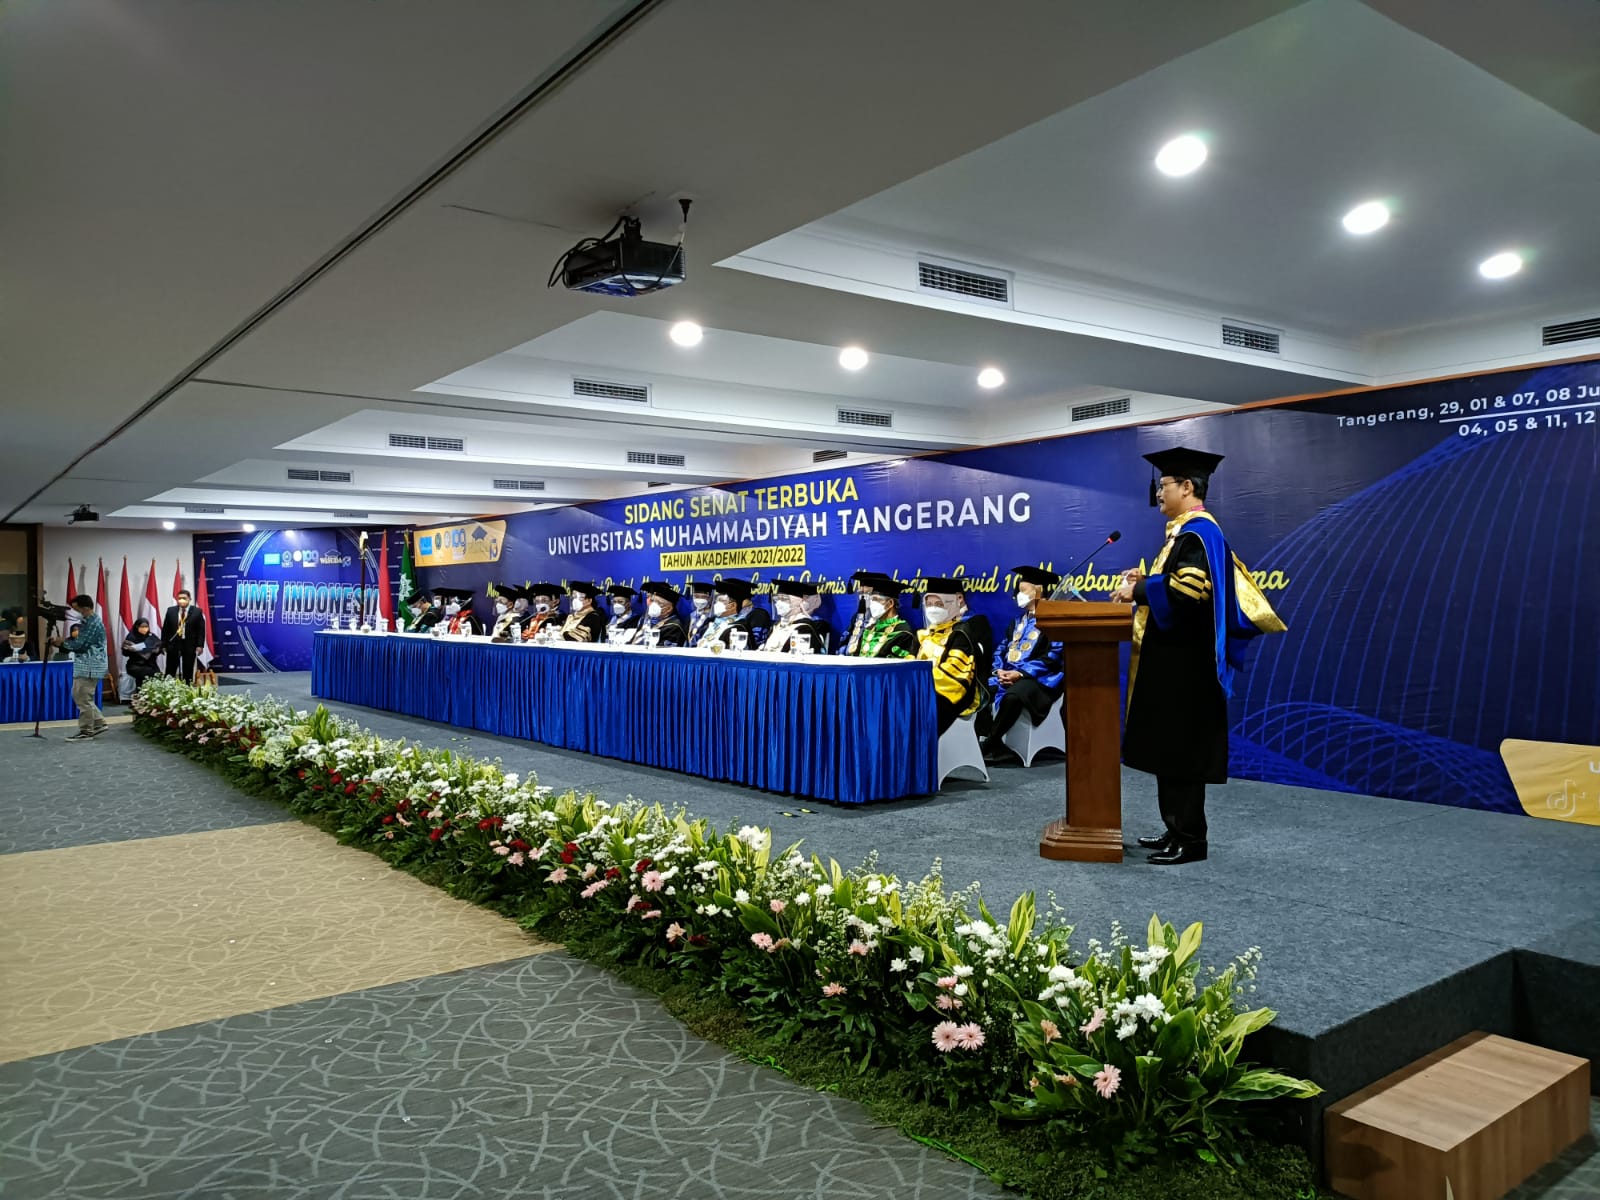 Kegiatan wisuda mahasiswa Universitas Muhammadiyah Tangerang (UMT) secara bertahap di Aula Jenderal Sudirman, Kampus UMT.